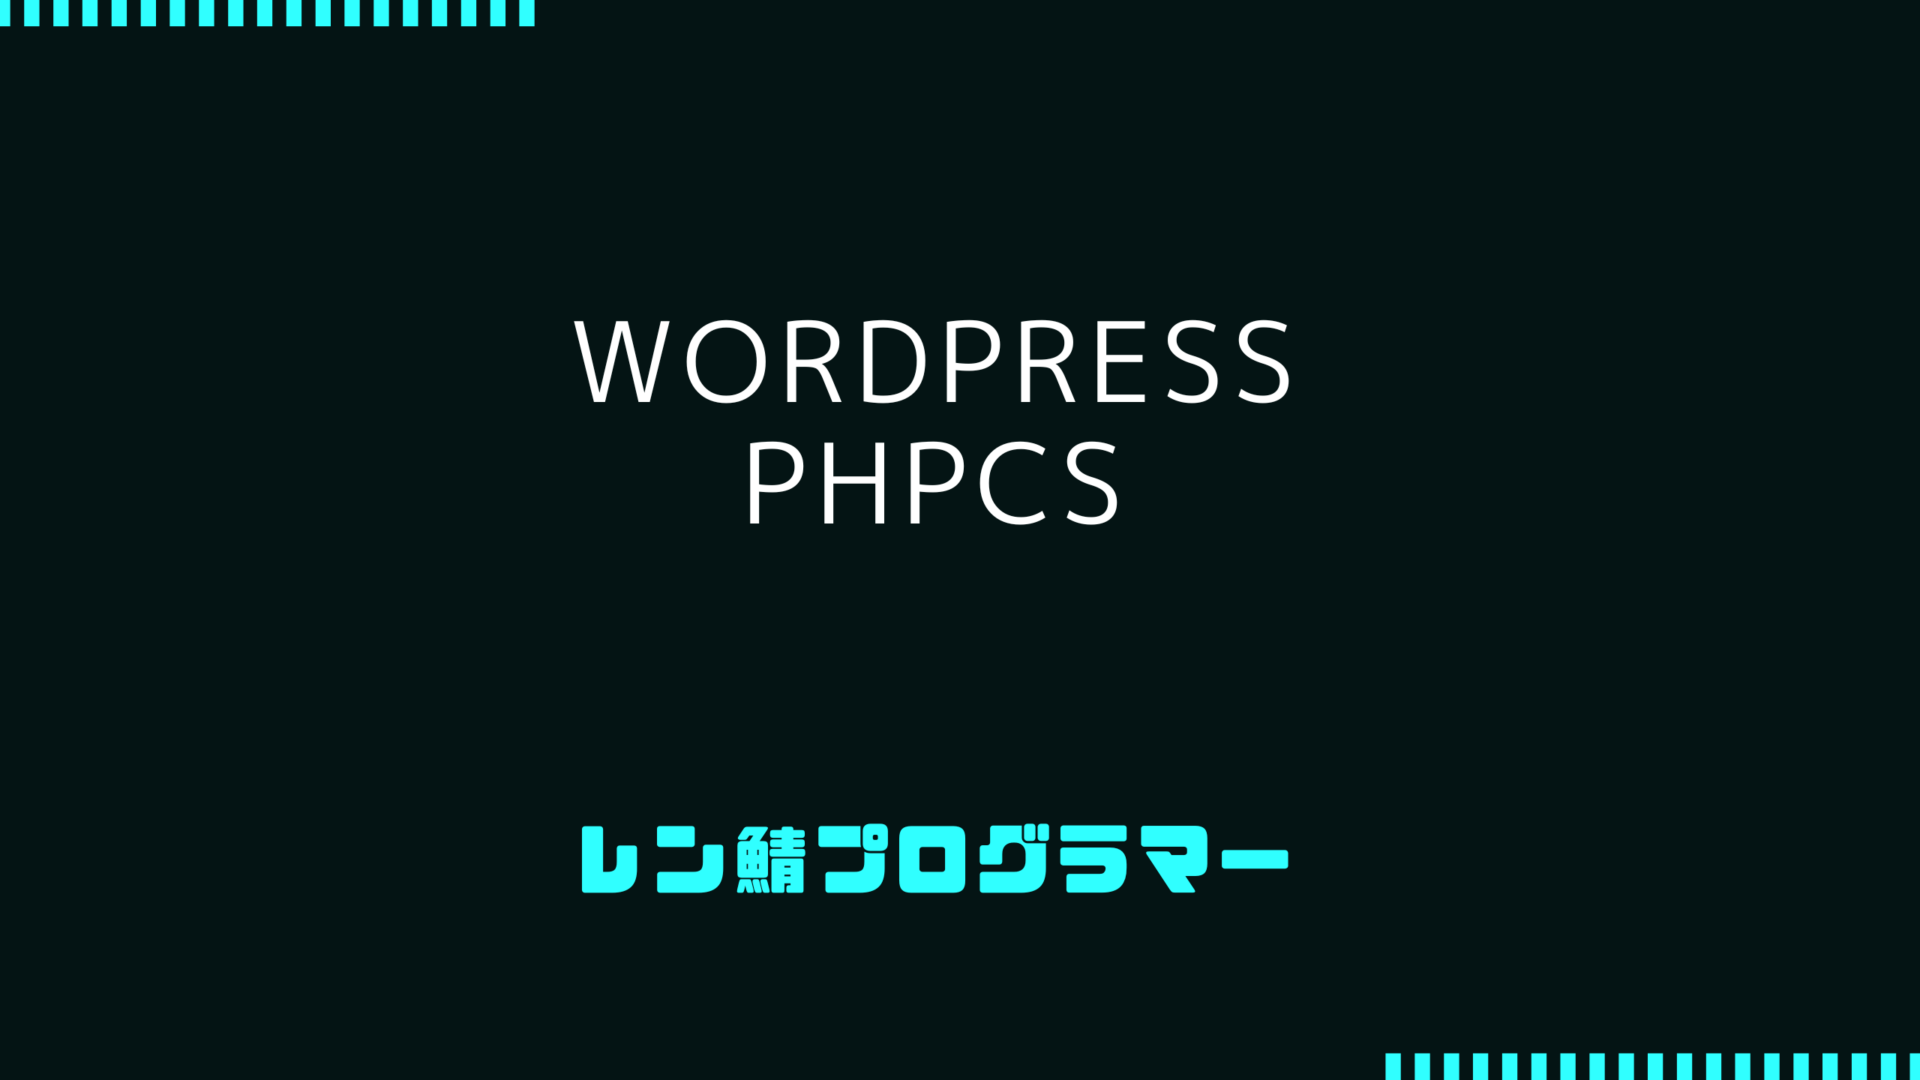 WordPressプラグイン開発でphpcsを使った静的解析をする方法